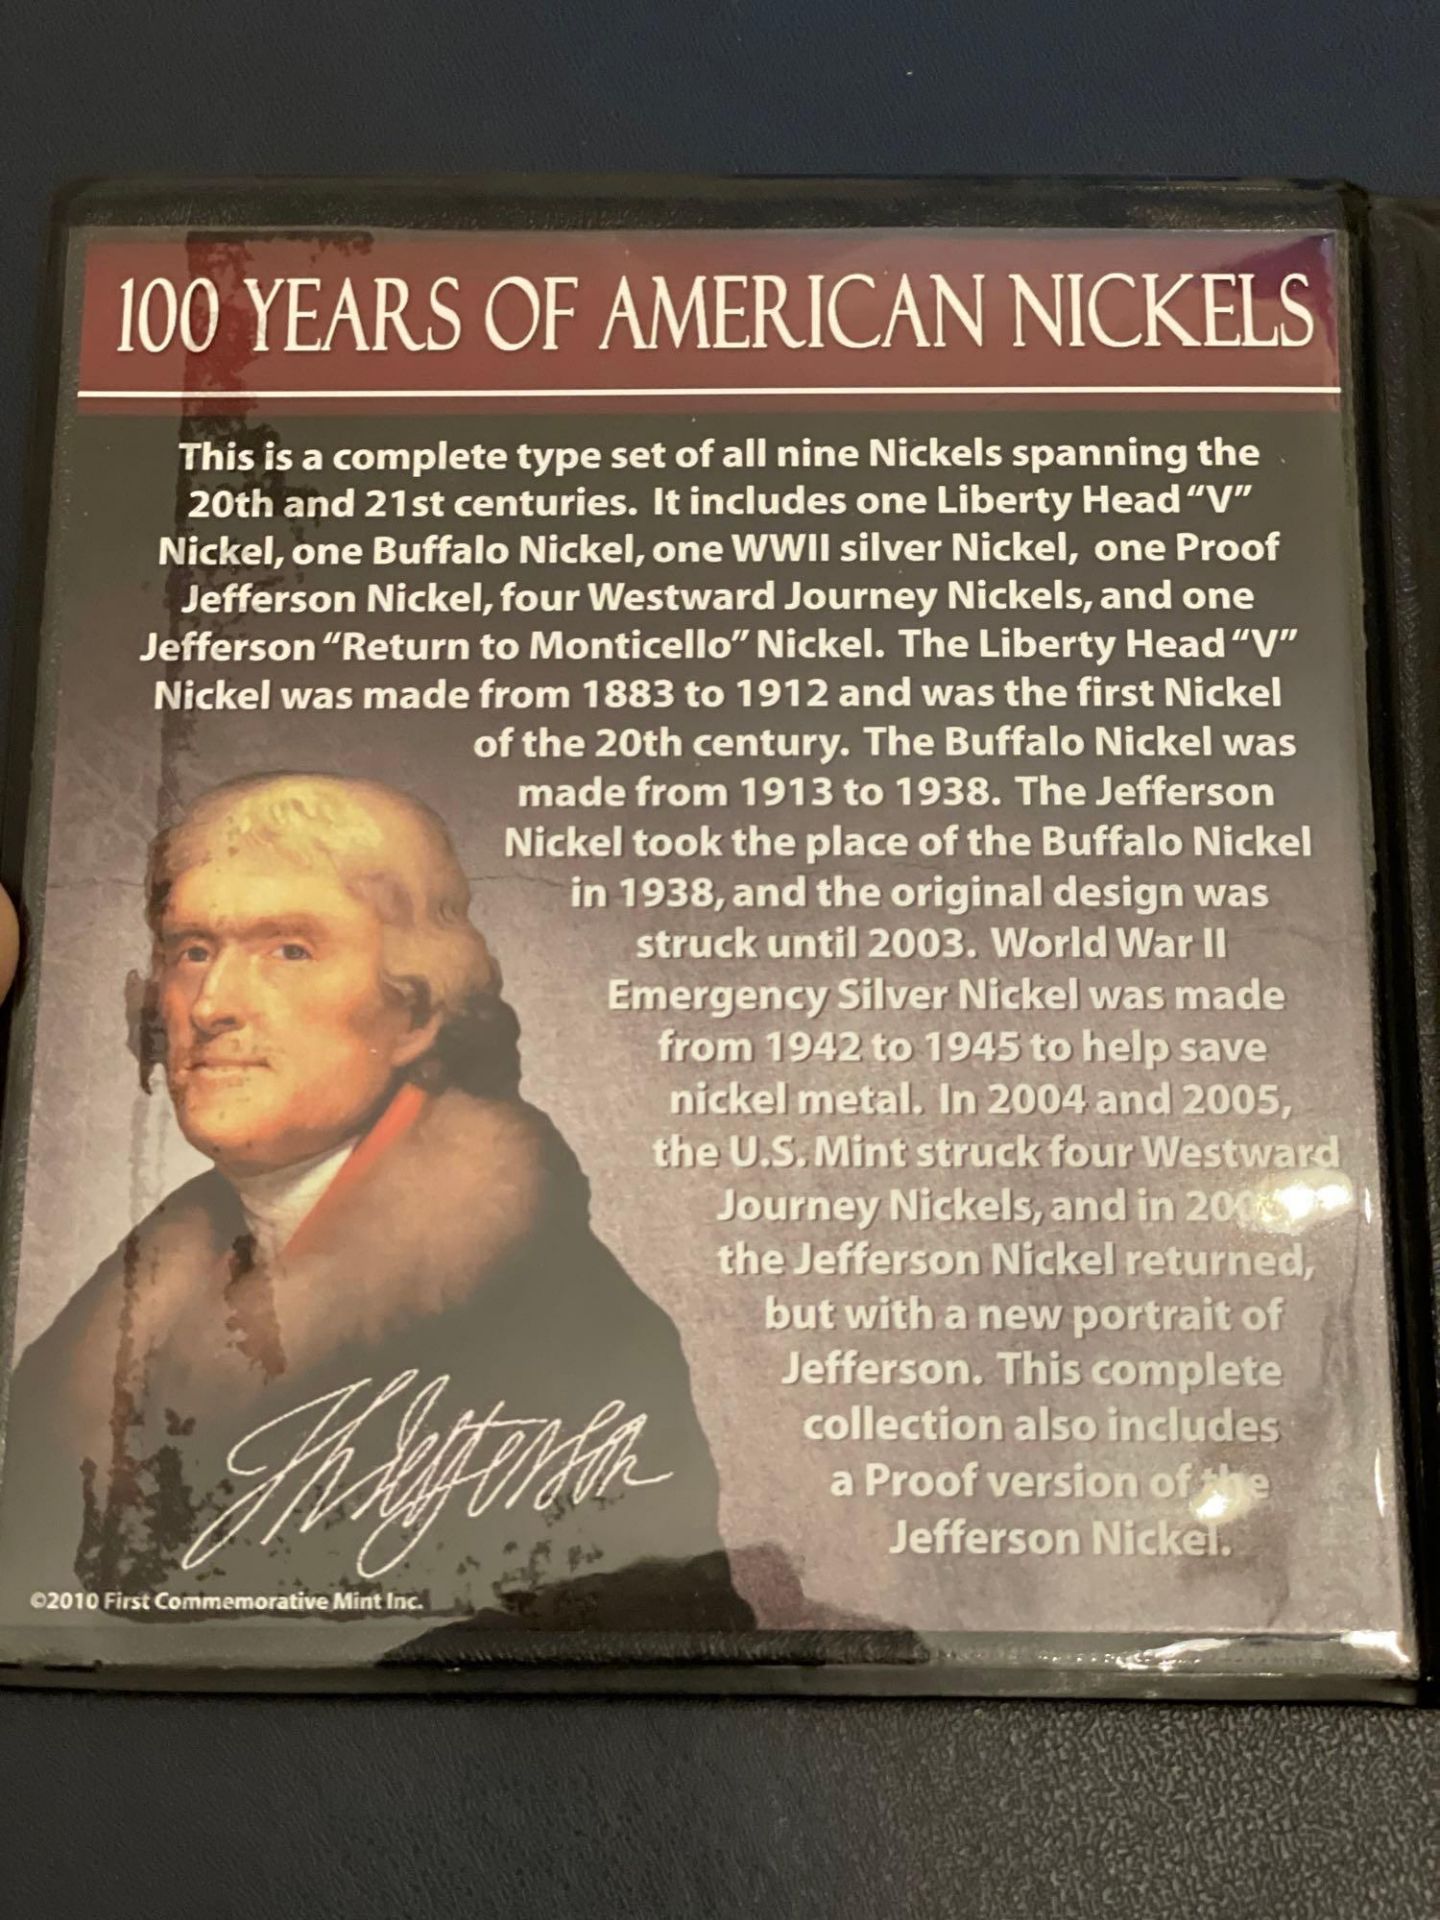 100 Years of American Nickels - Image 2 of 4